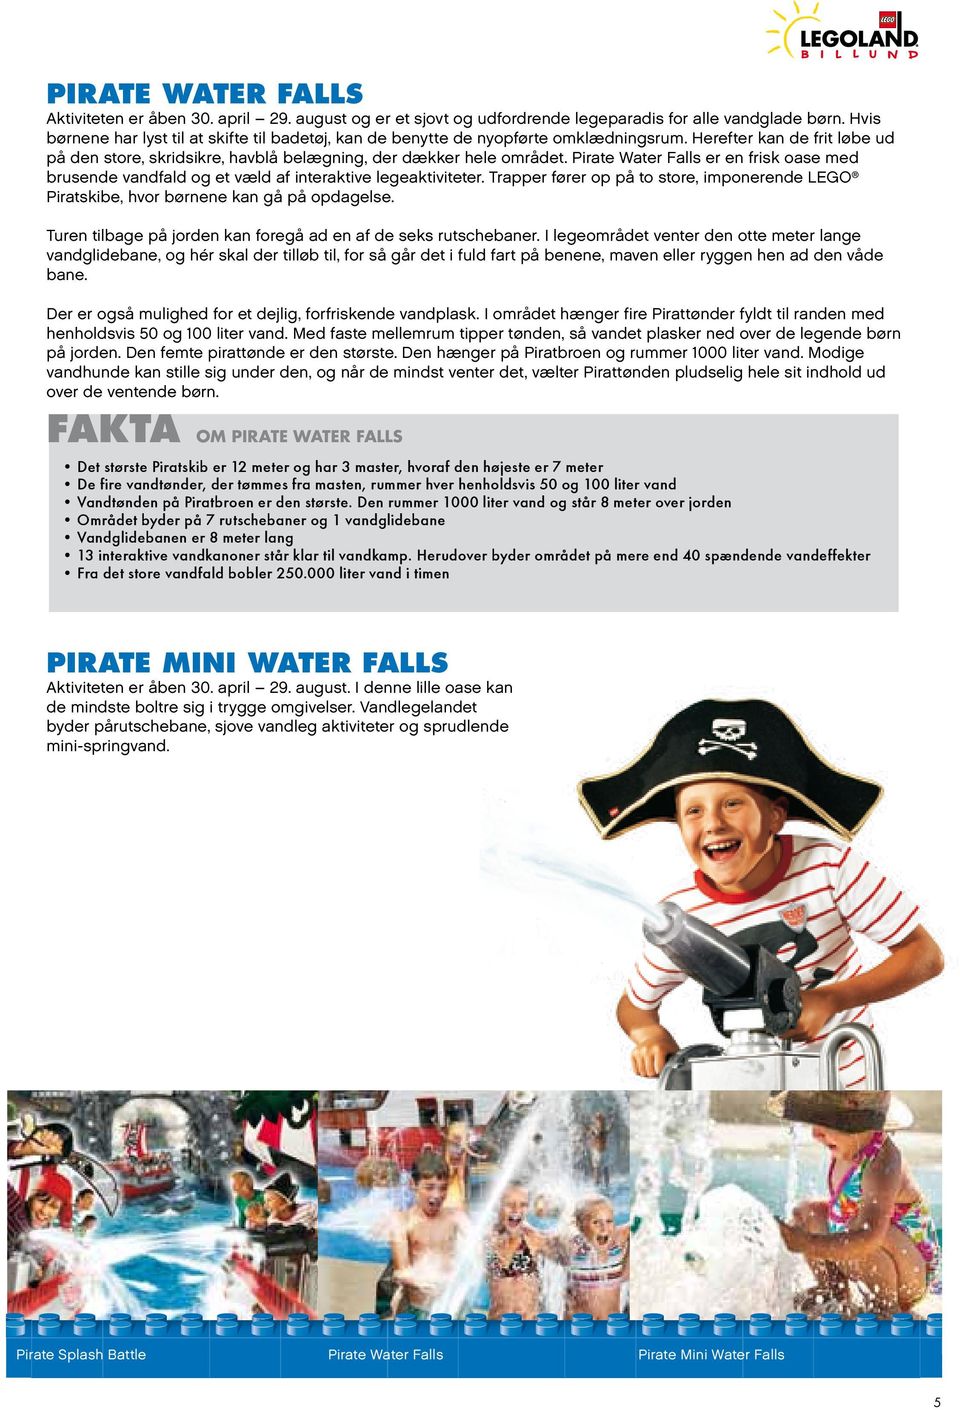 Pirate Water Falls er en frisk oase med brusende vandfald og et væld af interaktive legeaktiviteter. Trapper fører op på to store, imponerende LEGO Piratskibe, hvor børnene kan gå på opdagelse.